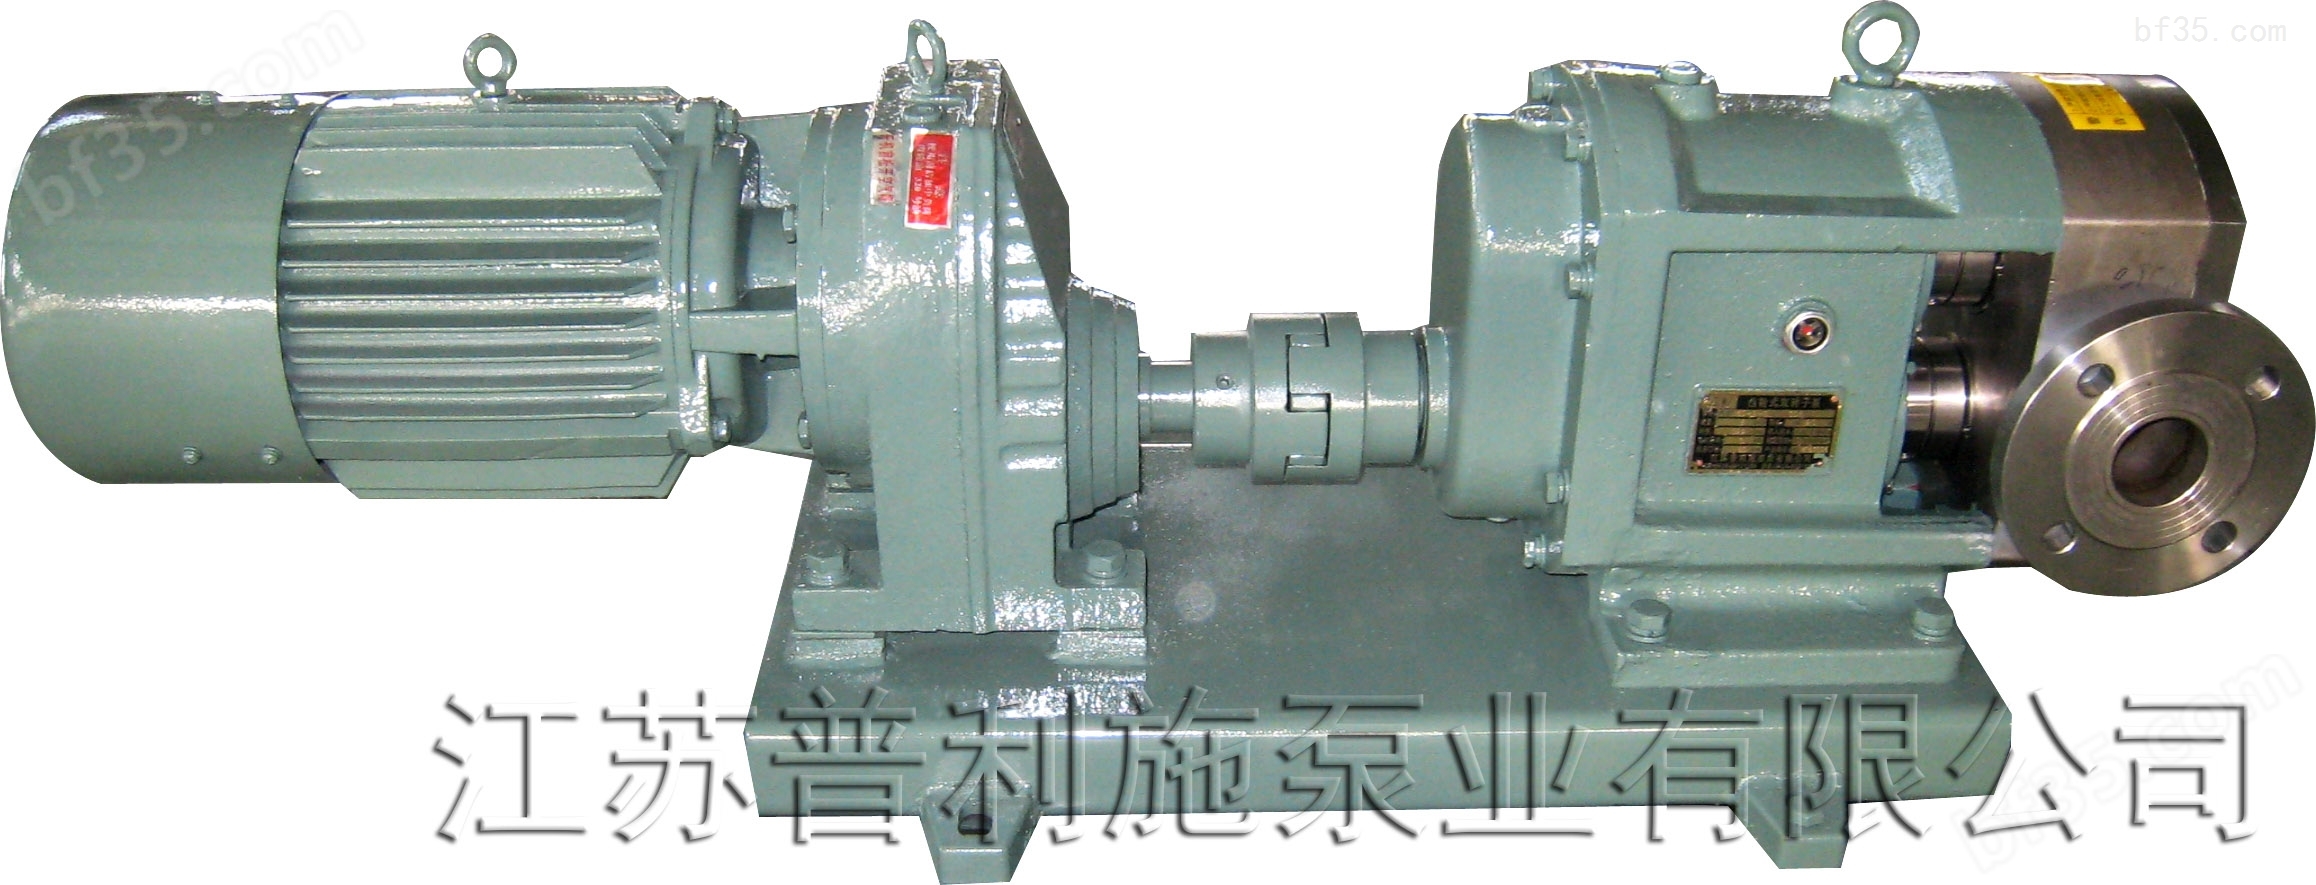 专业生产高粘度转子泵/不锈钢转子泵/凸轮转子泵